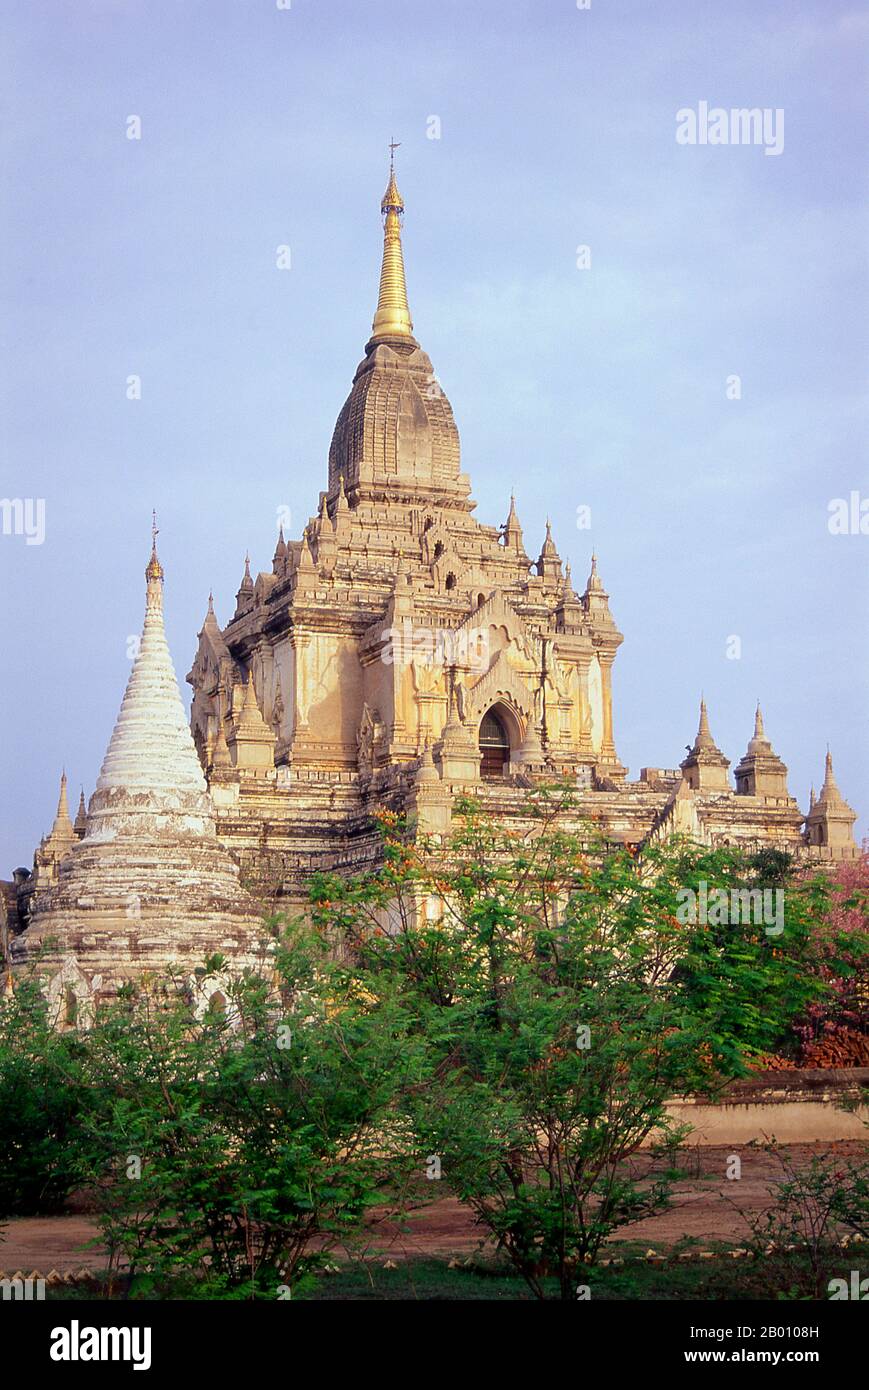 Birmania: Templo de Gawdawpalin, Ciudad Antigua de Bagan (pagan). La construcción del templo de Gawdawpalin comenzó durante el reinado de Narapatisithu (1174–1211) y se completó durante el reinado de Htilominlo (1121–1234). El templo Gawdawpalin es el segundo templo más alto de Bagan. Bagan, antes pagano, fue construido principalmente entre el siglo 11th y el siglo 13th. Formalmente titulado Arimaddanapura o Arimaddana (la ciudad del cruzado enemigo) y también conocido como Tambadipa (la tierra del cobre) o Tassadessa (la tierra parchada), era la capital de varios reinos antiguos en Birmania. Foto de stock